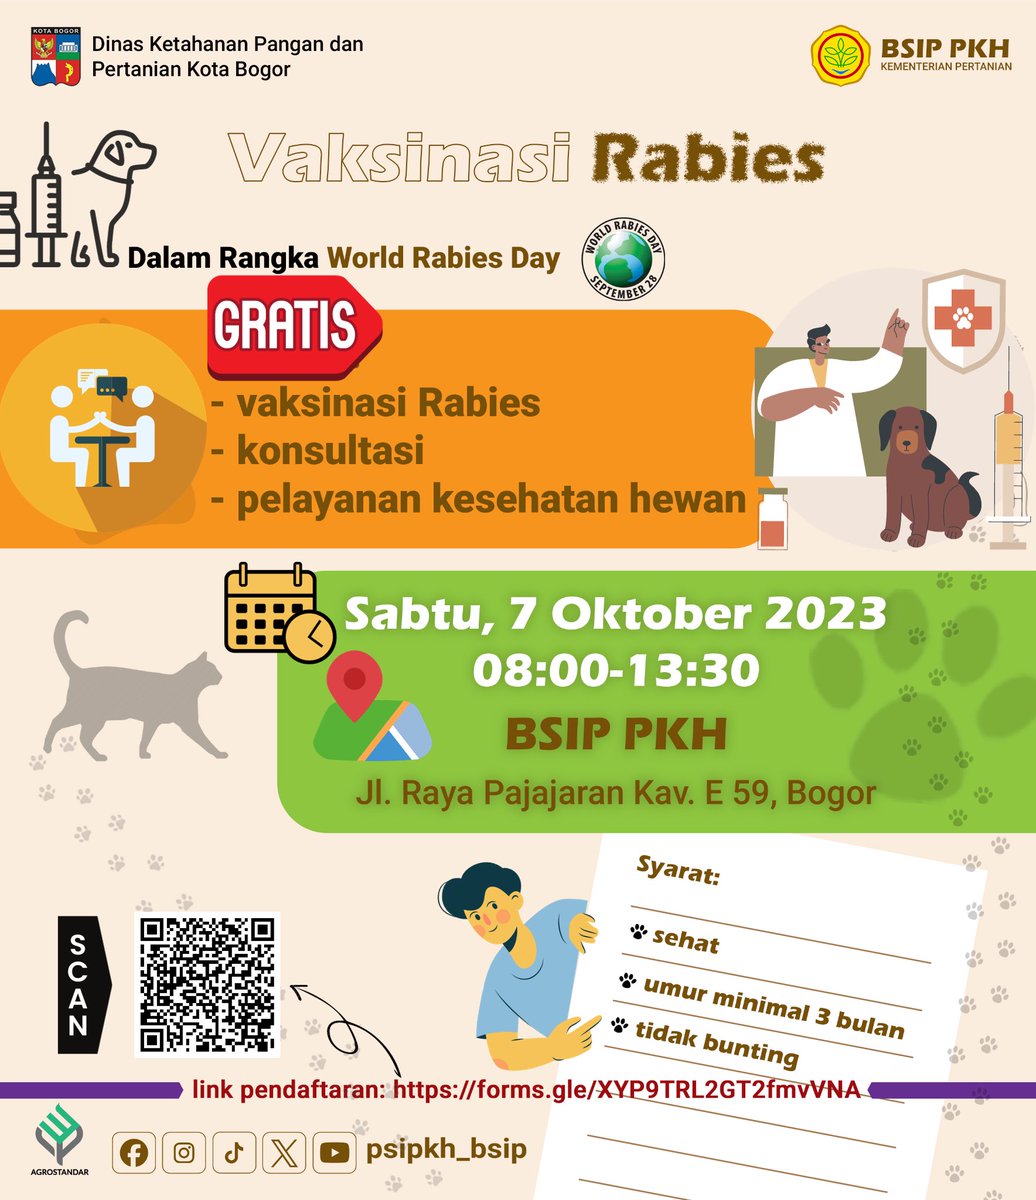 Halo SobaTani..

Dalam rangka memperingati hari rabies sedunia, BSIP PKH mengadakan vaksinasi rabies gratis bagi hewan peliharaan SobaTani semua loh! 

Daftar sekarang ya SobaTani! 

#worldrabiesday 
#harirabiessedunia 
#rabies 
#bsippkh
#bsipkementan